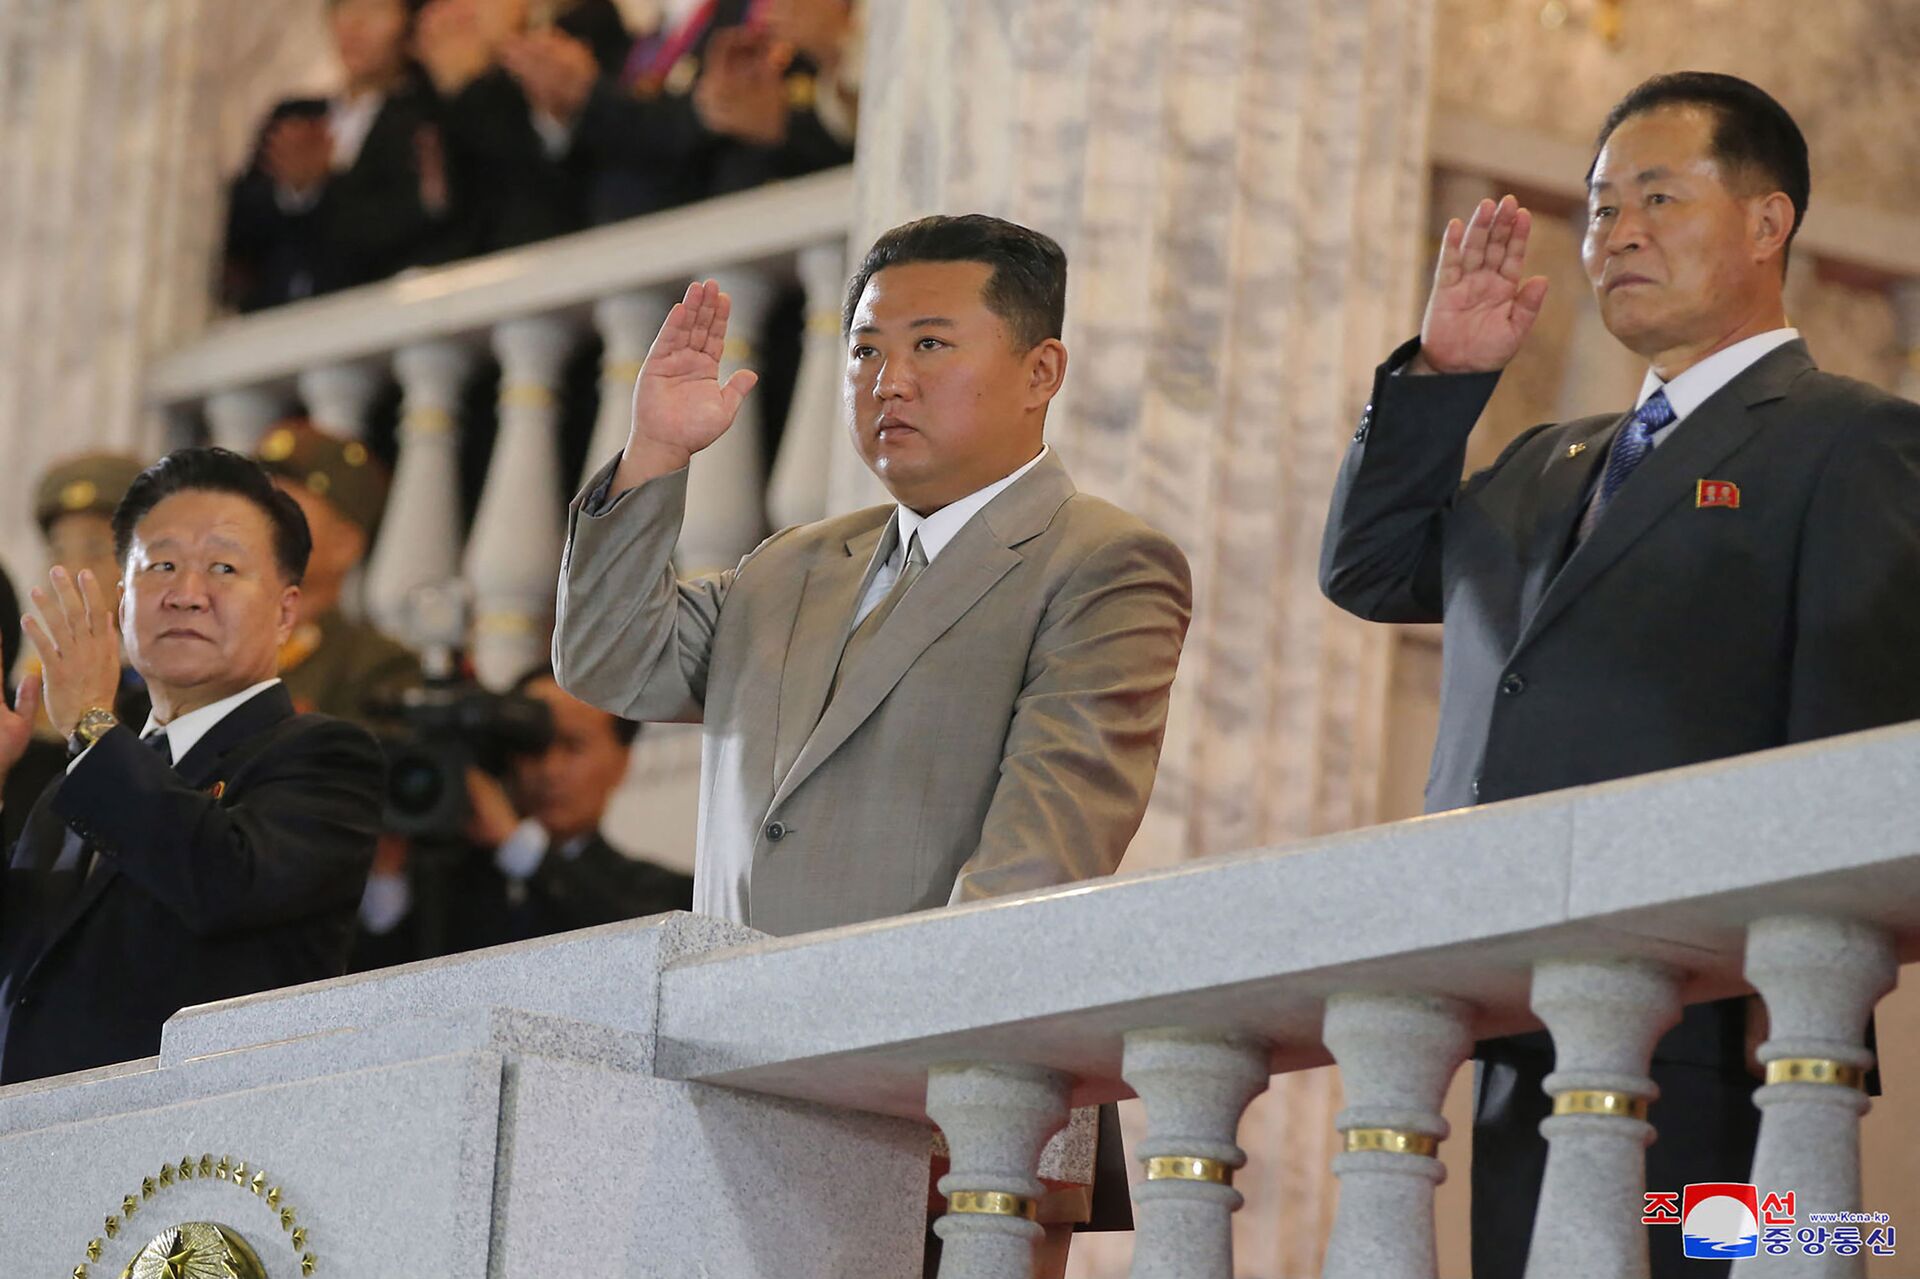  صورة نشرتها وكالة الأنباء المركزية الكورية الرسمية، وتظهر الزعيم الكوري الشمالي كيم جونغ أون يشارك في عرض عسكري للاحتفال بالذكرى الـ 73 لتأسيسها في بيونغ يانغ، 9 سبتمبر/ أيلول 2021 - سبوتنيك عربي, 1920, 23.11.2021